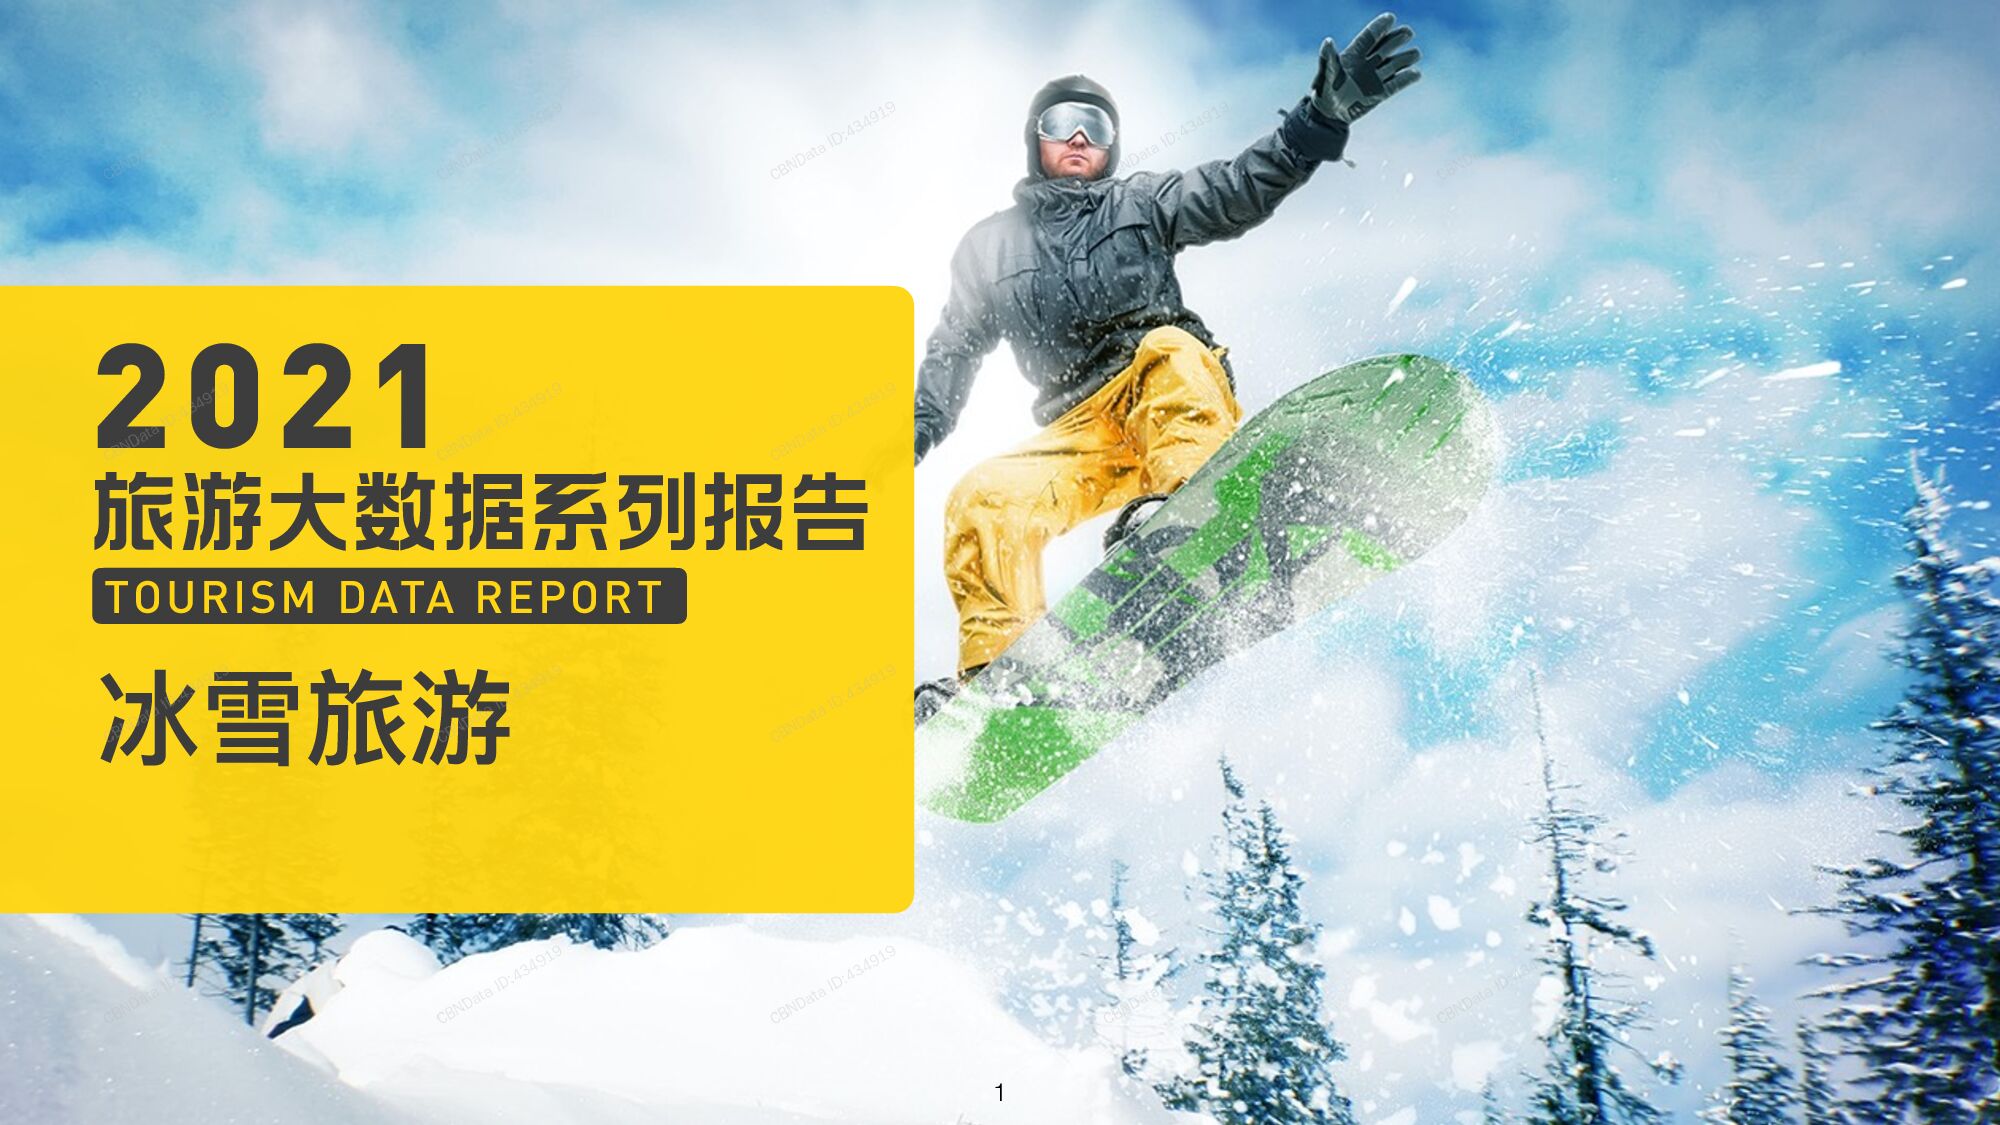 2021年中国冰雪旅游消费大数据报告第一财经CBNData